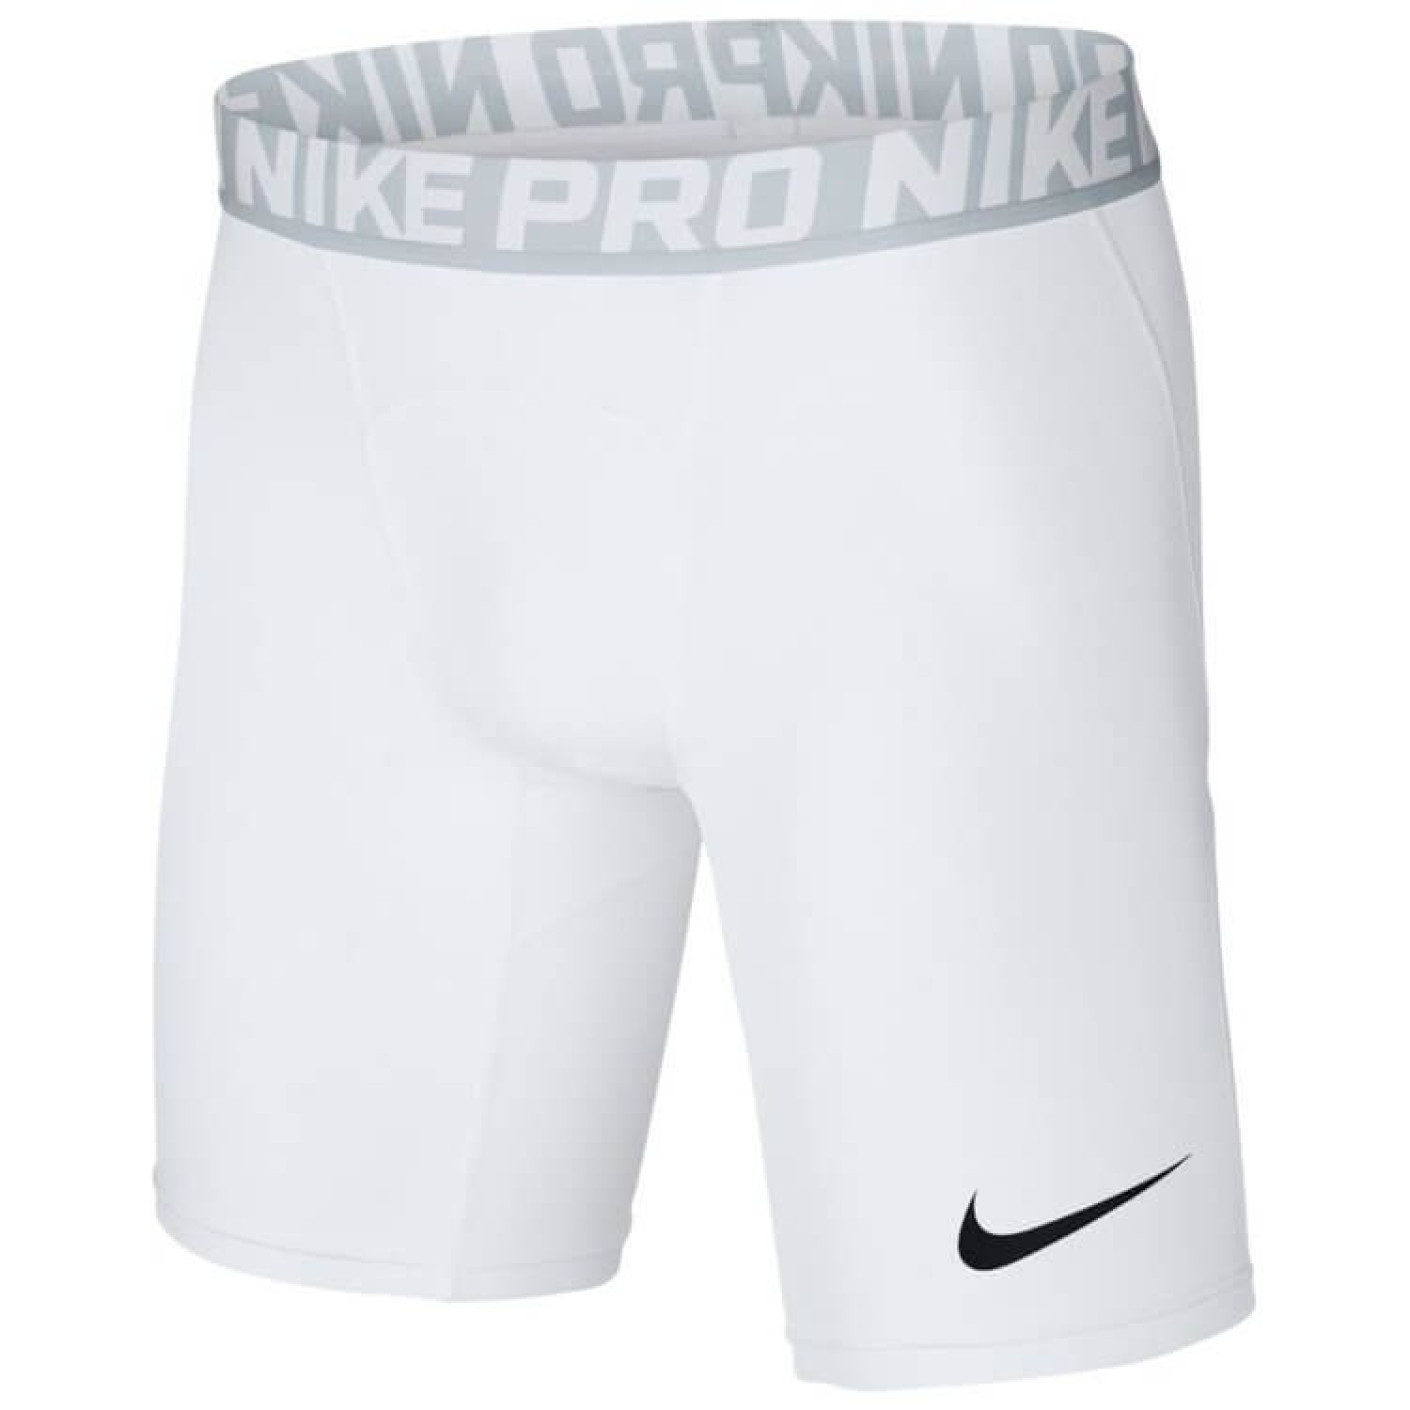 Nike Pro Compressie Broekje Wit